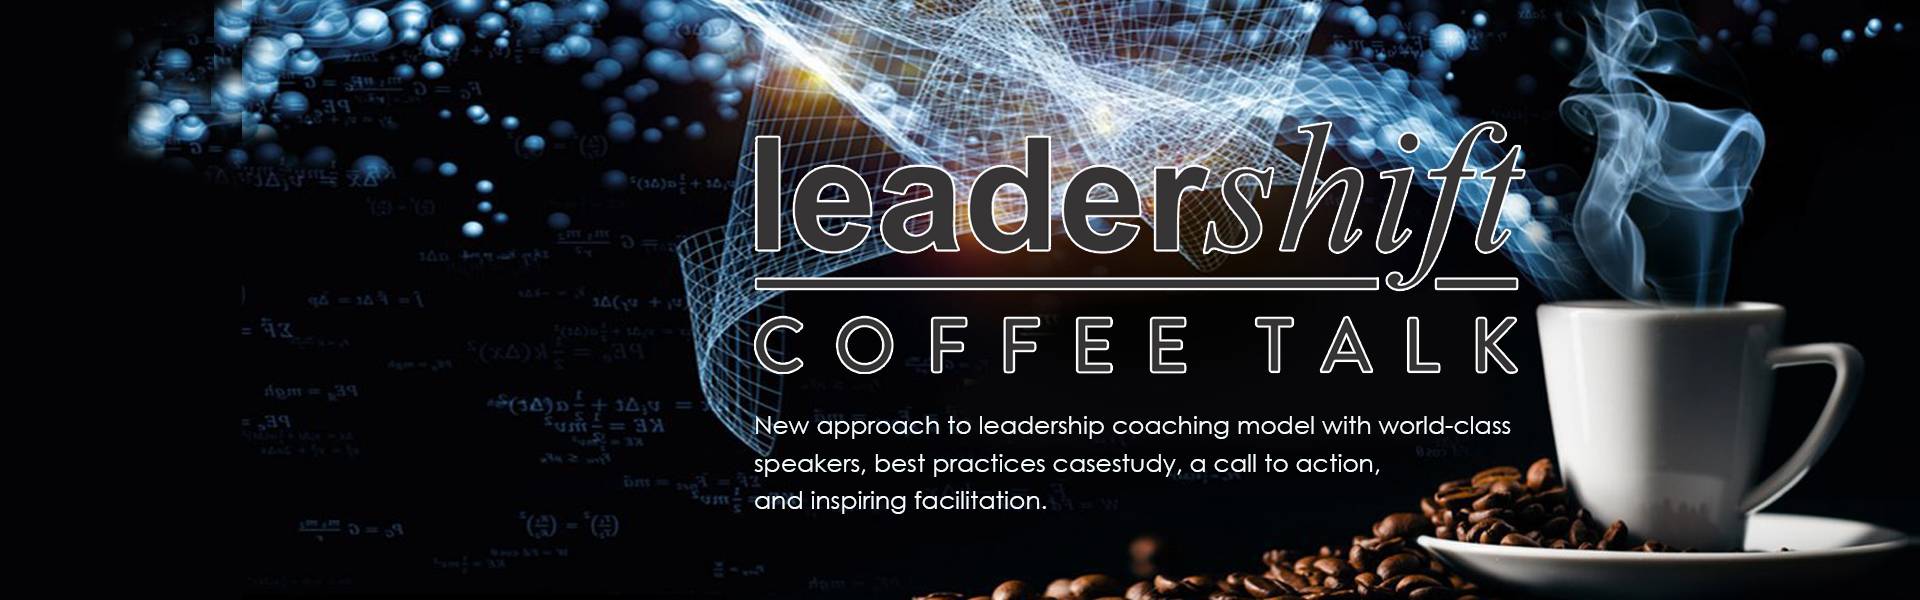 LeaderShift Coffee Talk